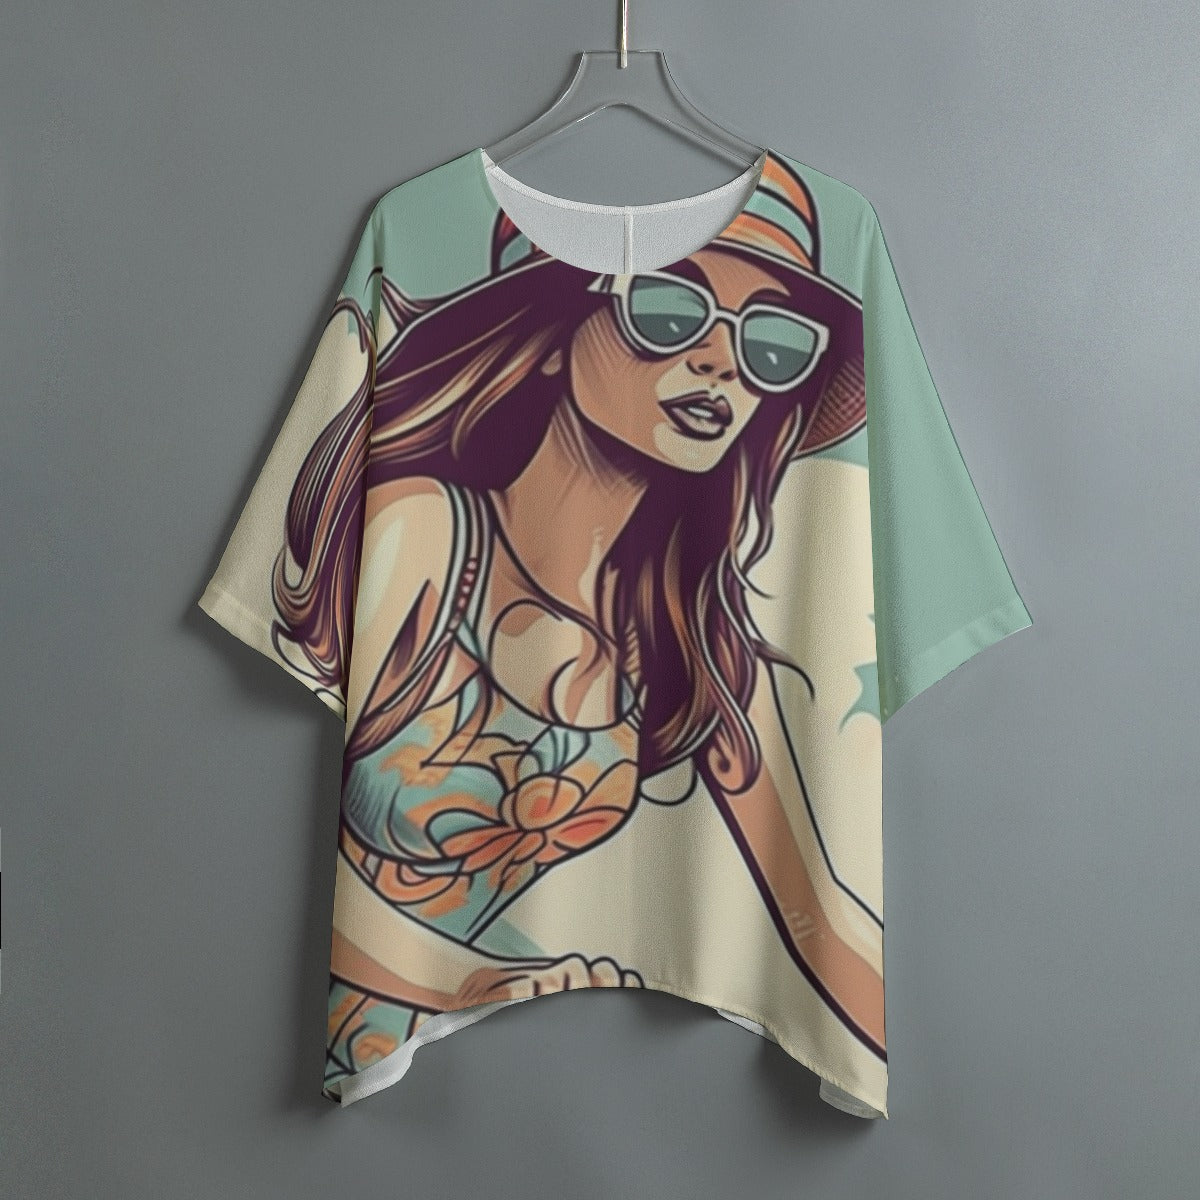 All-Over Print Women's Bat Sleeve Shirt